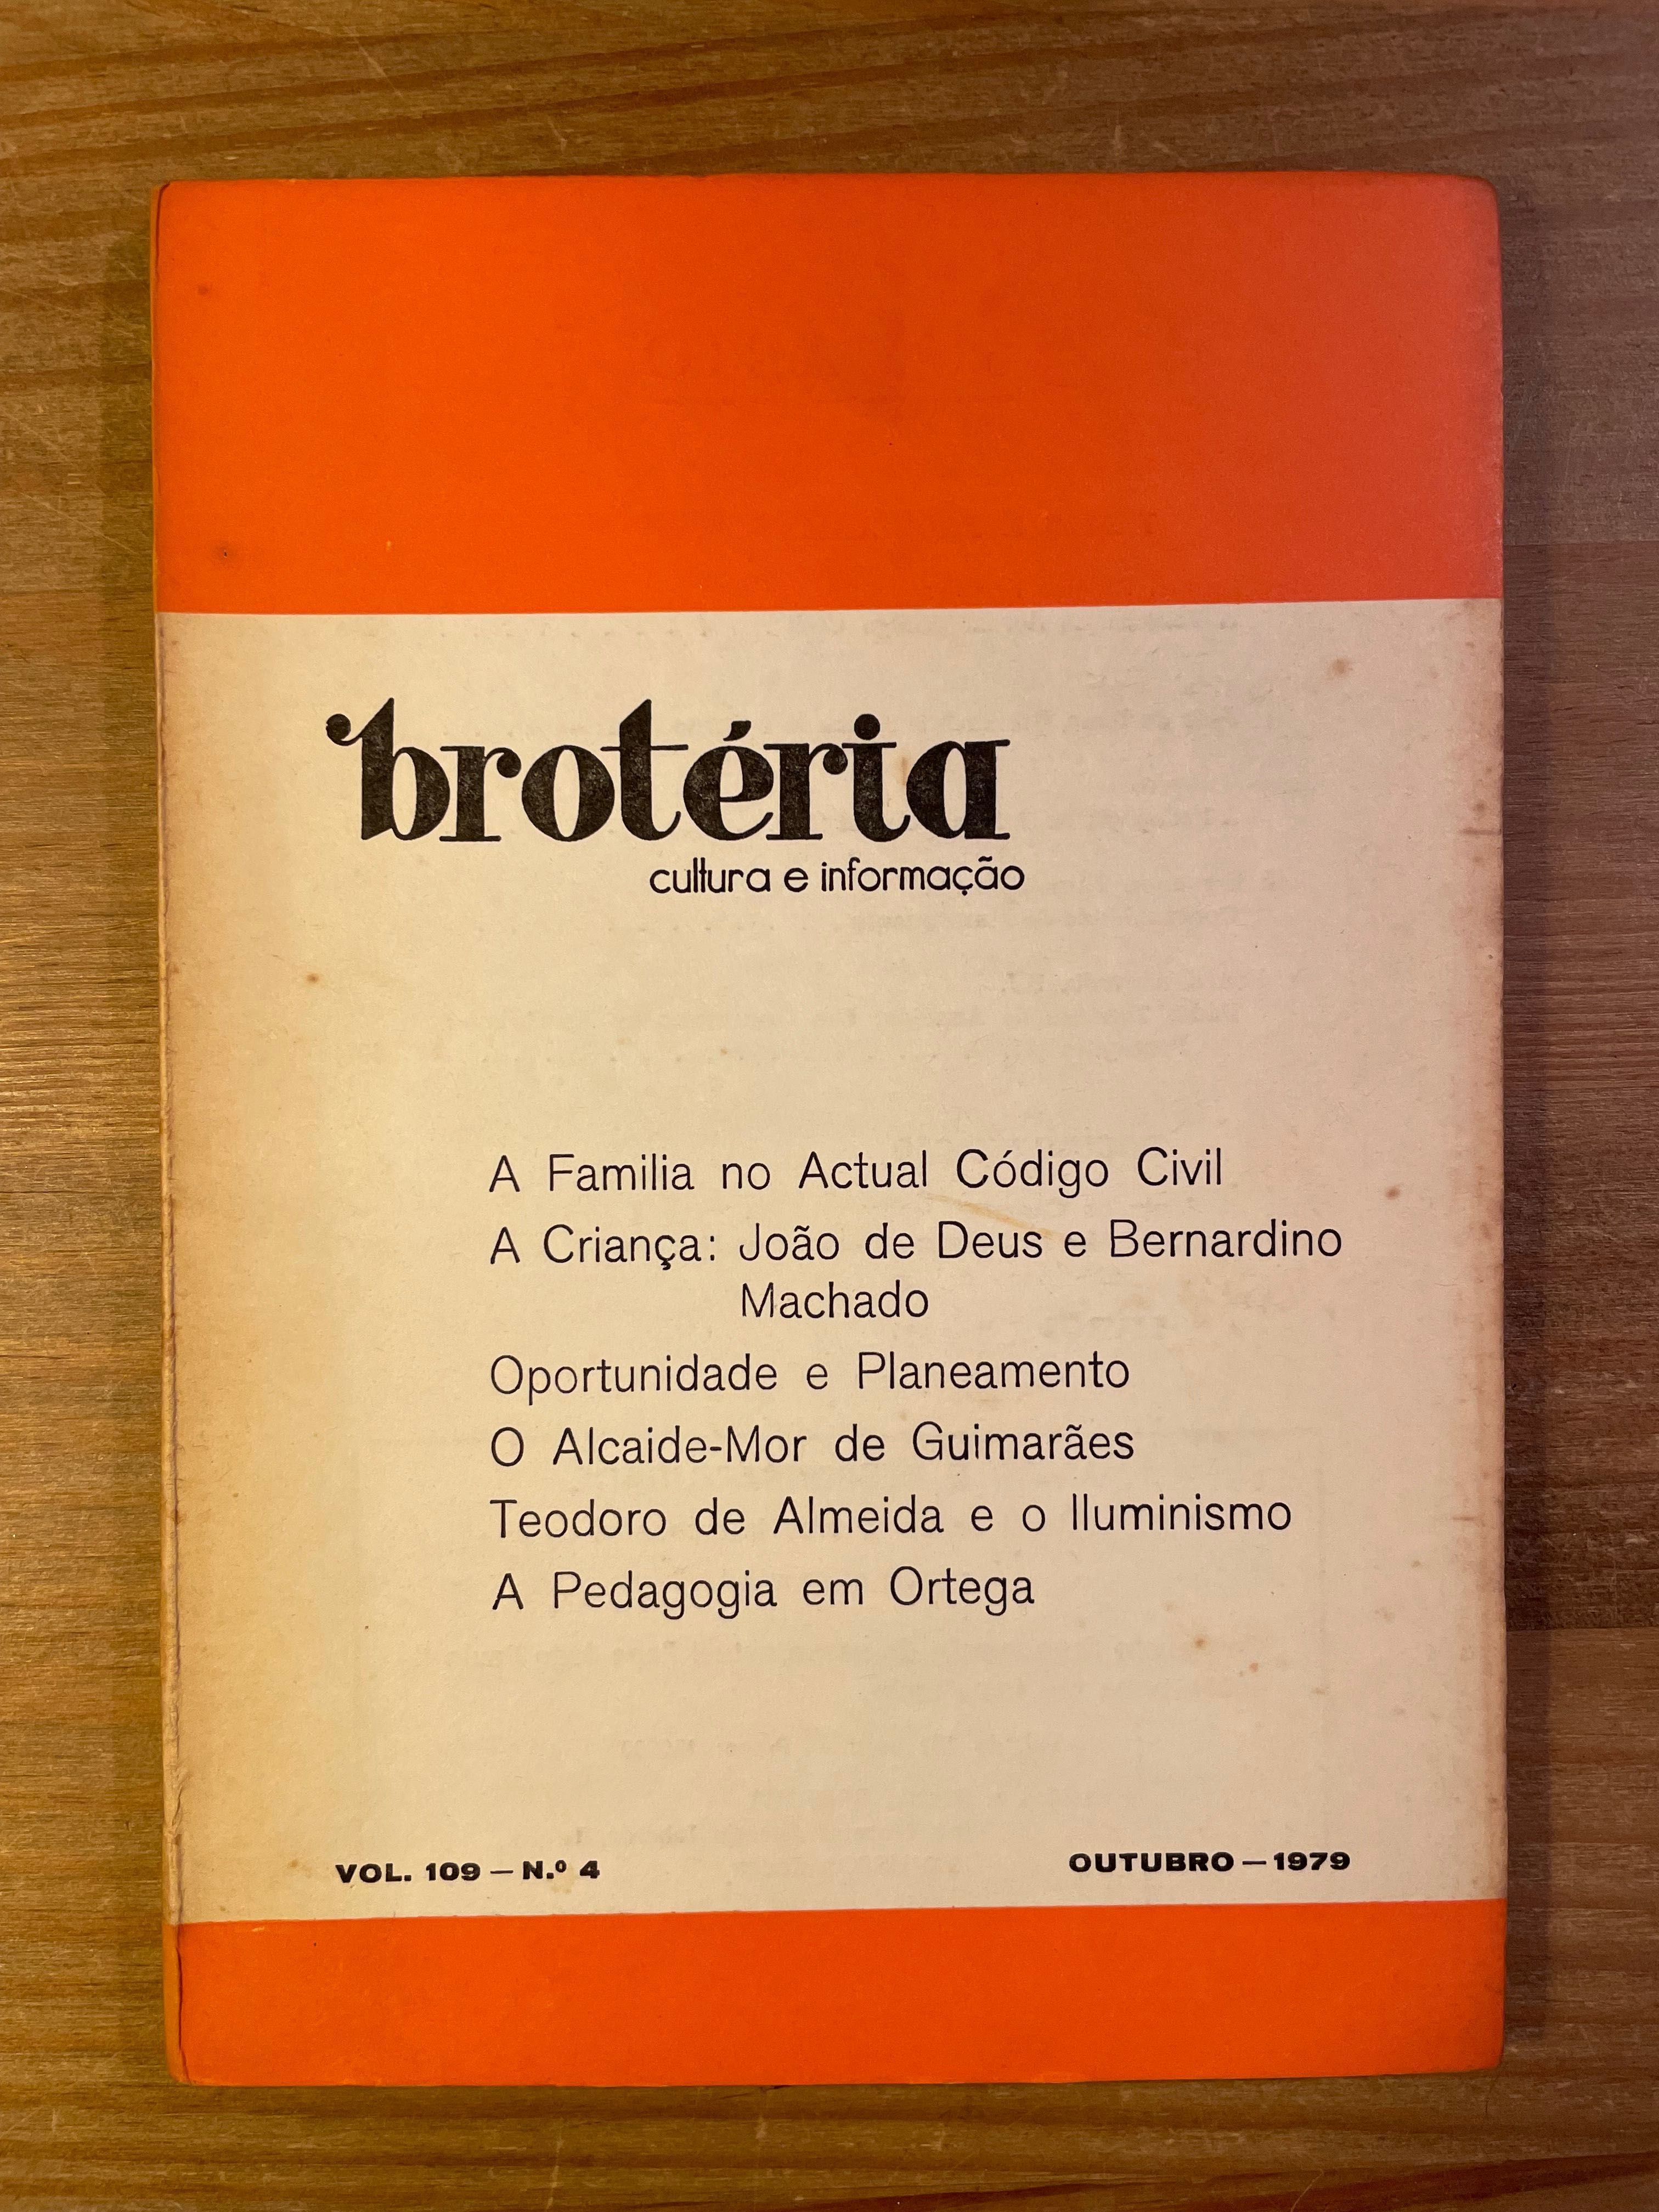 Brotéria - N. 4 - 1979 (portes grátis)